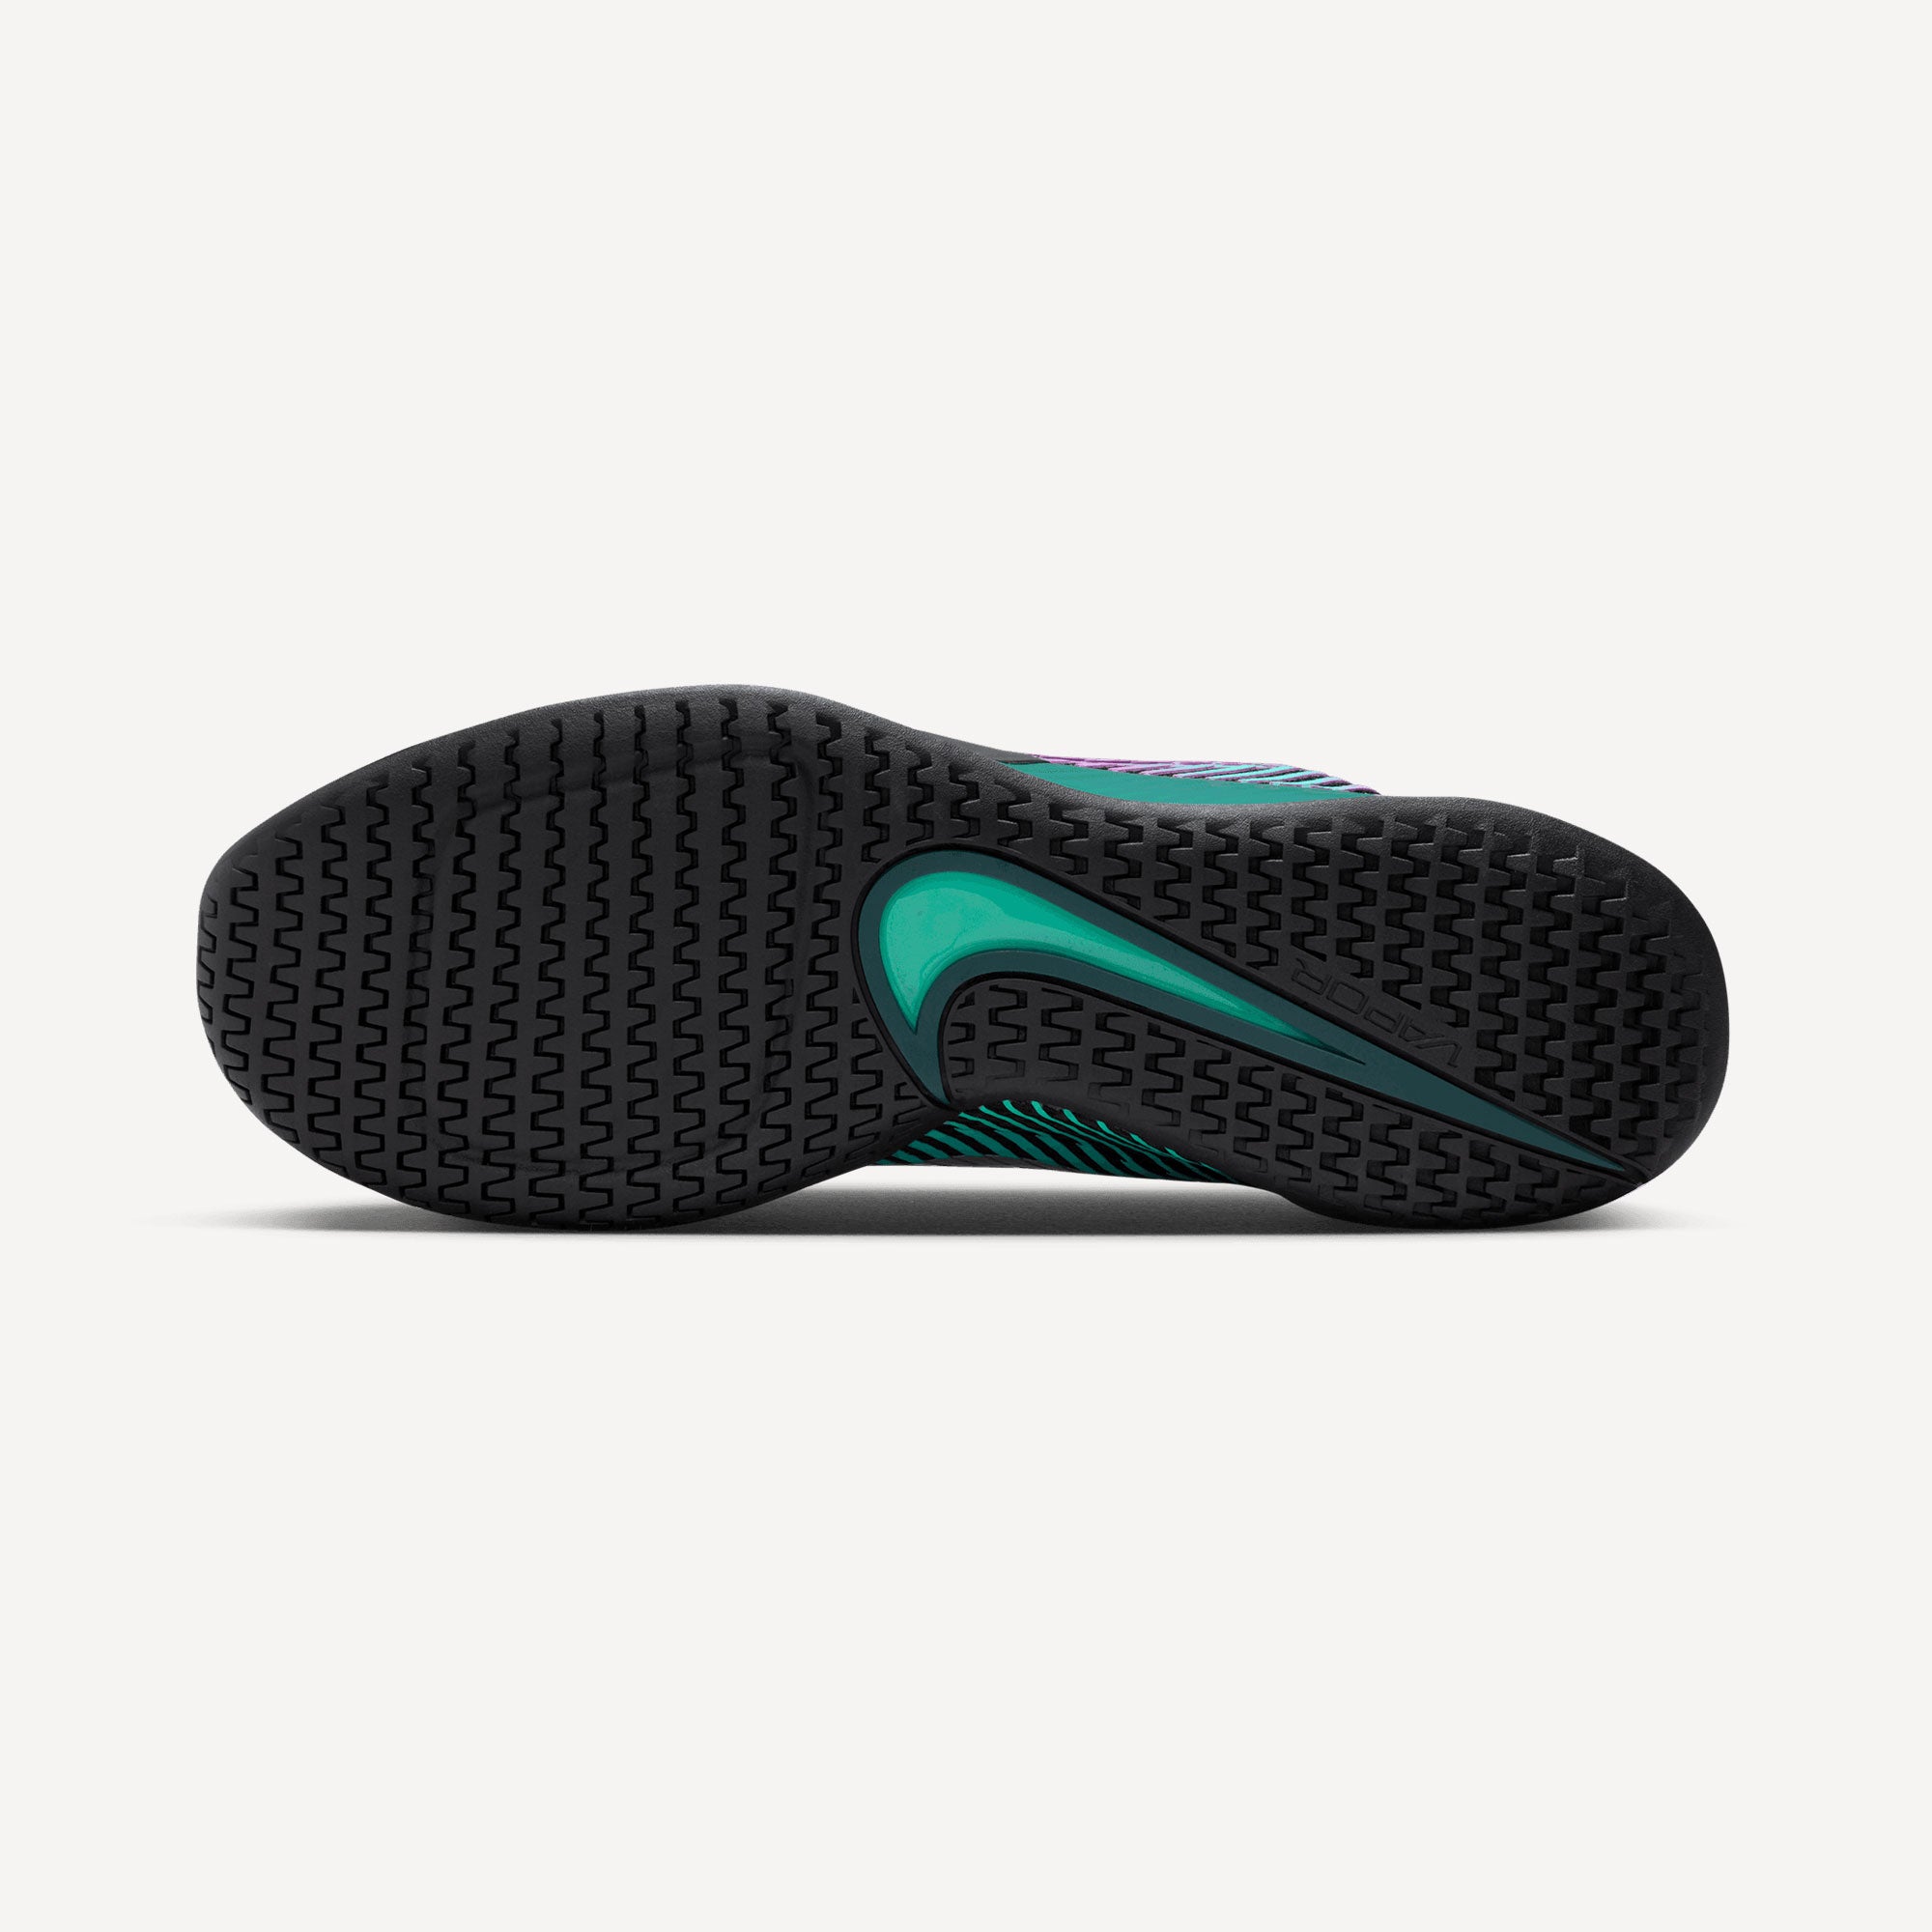 NikeCourt Air Zoom Vapor 11 Premium Men's Hard Court Tennis Shoes Black (2)